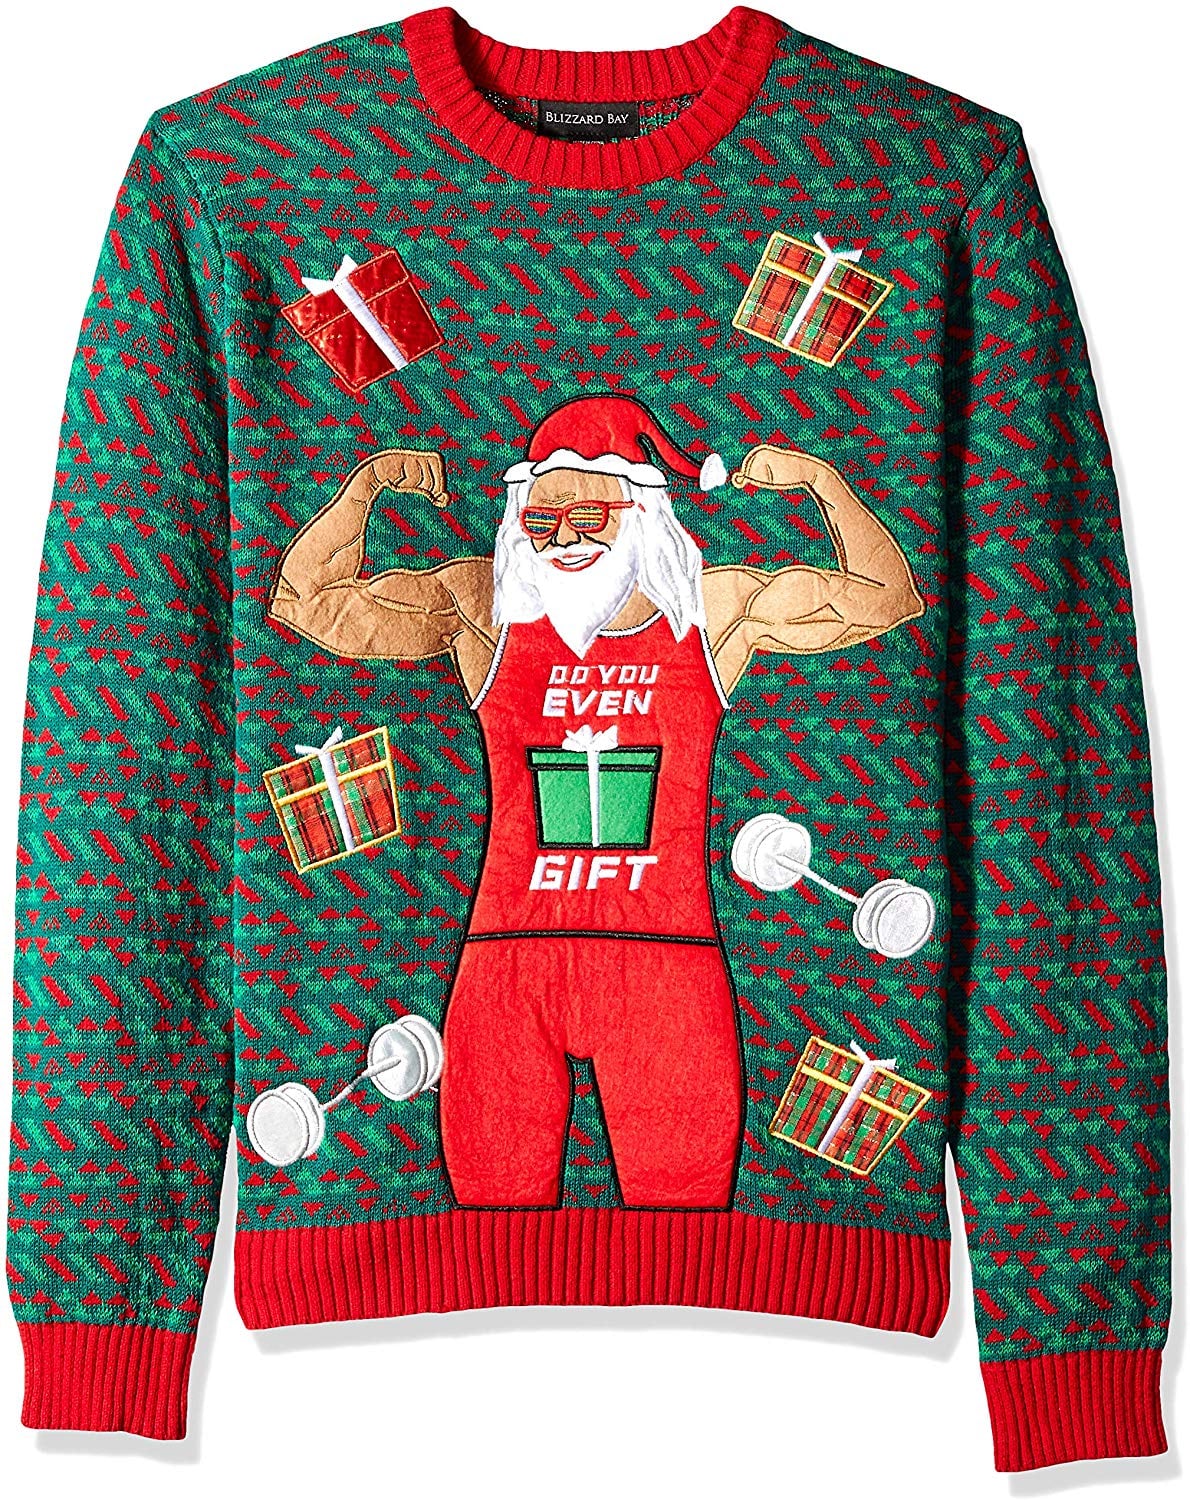 Santa is Bae Ugly Holiday Sweatshirt Crewneck Sweatshirt in Navy Small